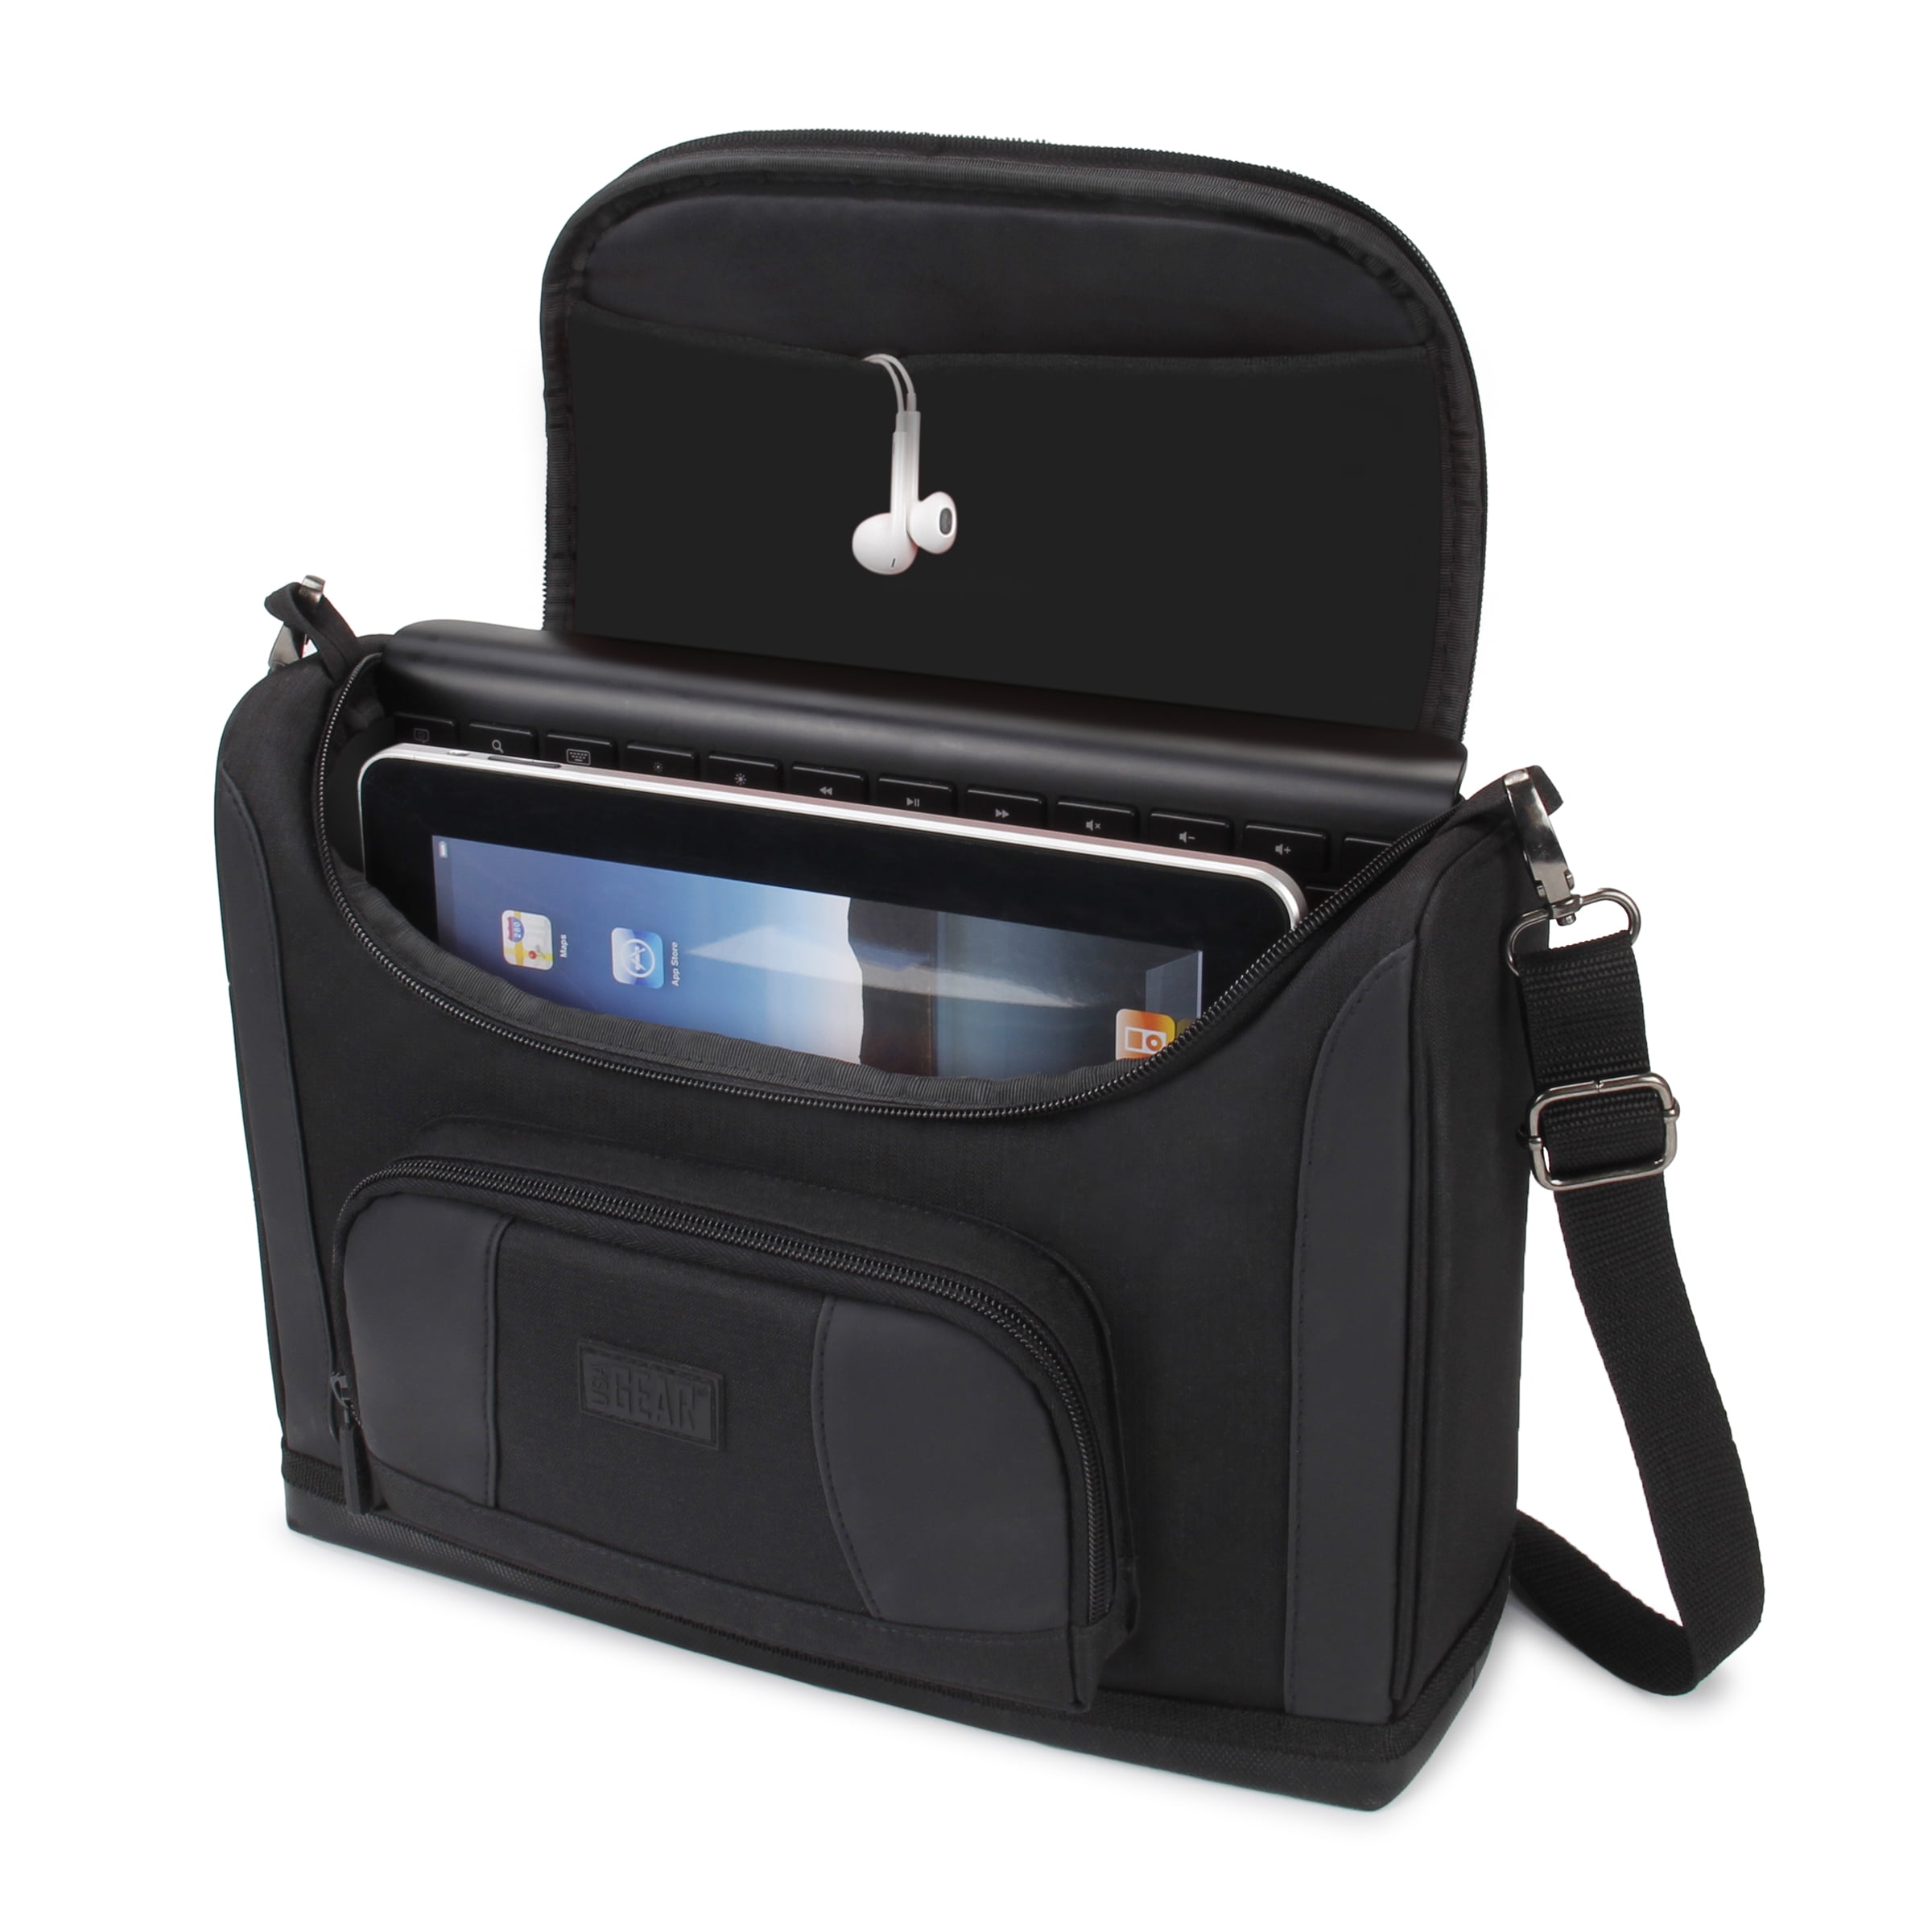 New Men's fashion durable sport travel shoulder messenger bag for 7.9" tablet PC